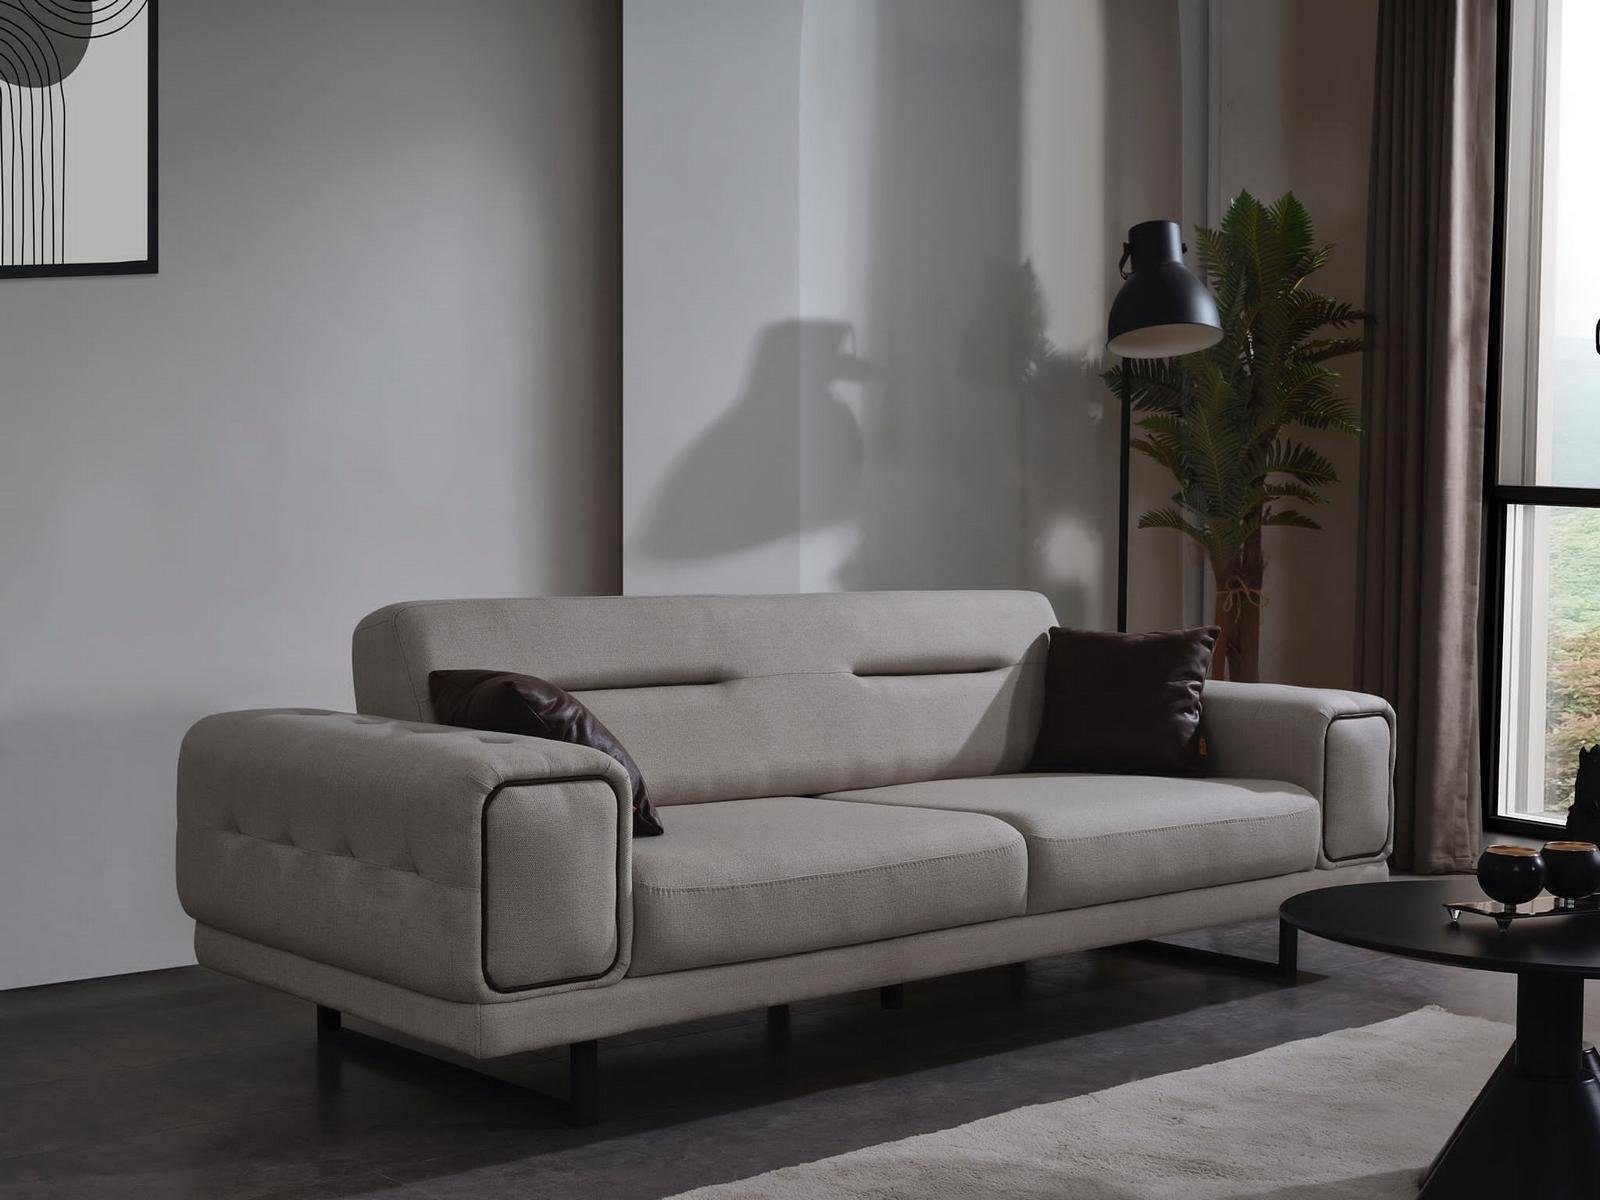 Neu, JVmoebel Einrichtung Luxus Europa Modern Sofa Wohnzimmer MAde in Teile, Dreisitzer Couch Sofa Sofas 1